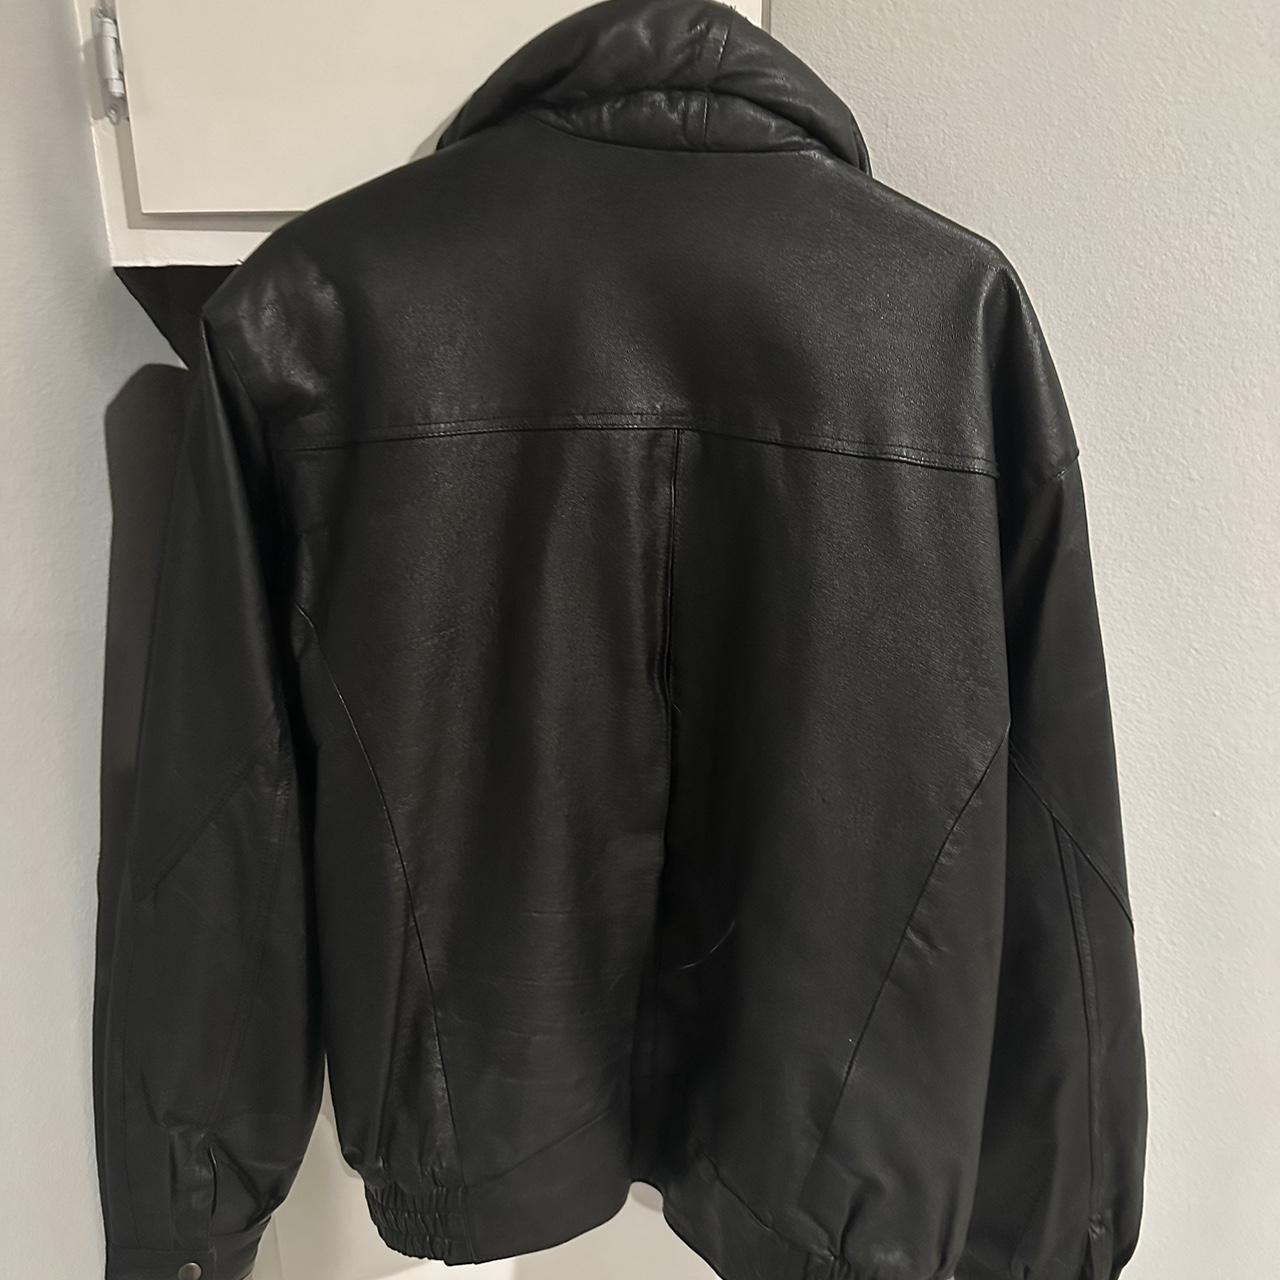 Black Authentic Leather Bomber Jacket #vintage... - Depop